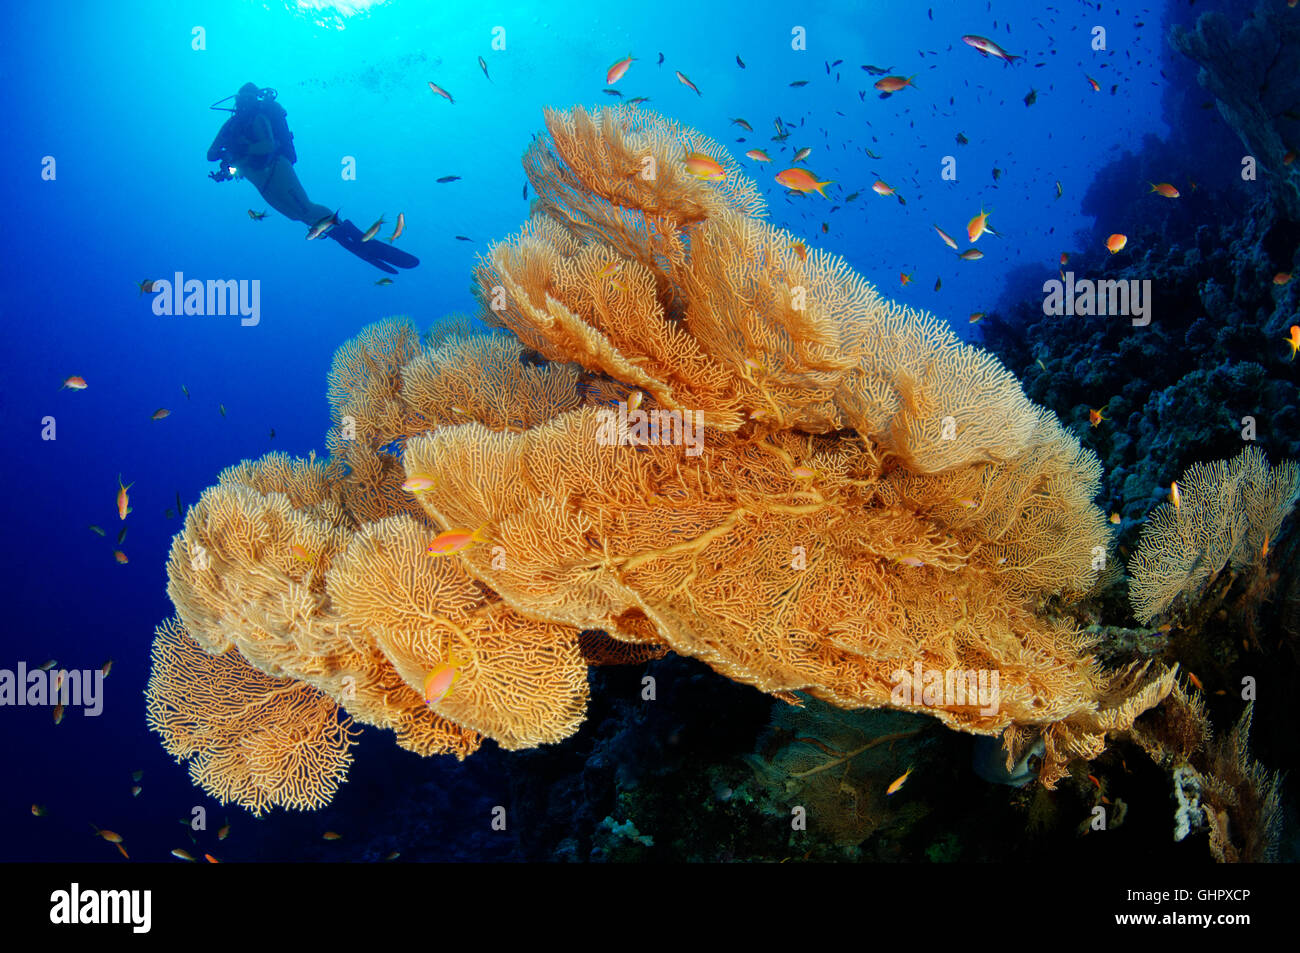 Korallenriff mit riesigen Gorgonien oder Gorgonien und Scuba Diver, Hurghada, Giftun Island Reef, Rotes Meer, Ägypten Stockfoto